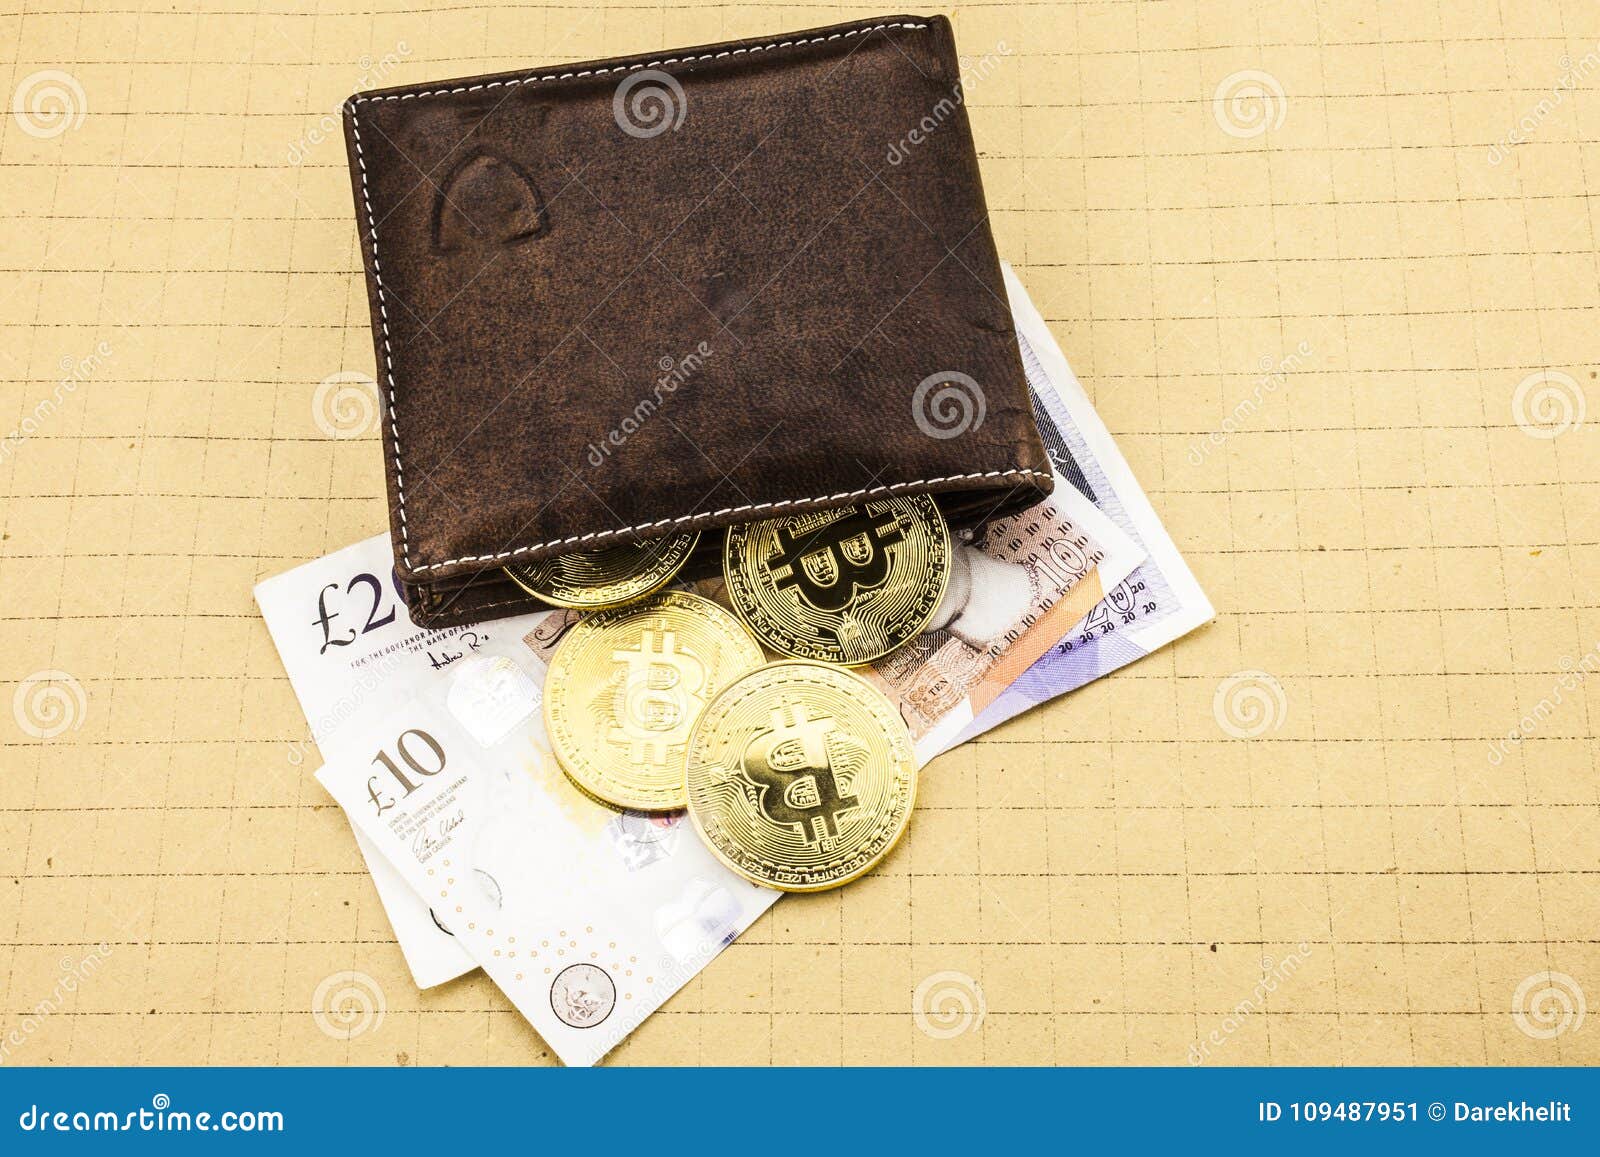 virtual bitcoin wallet